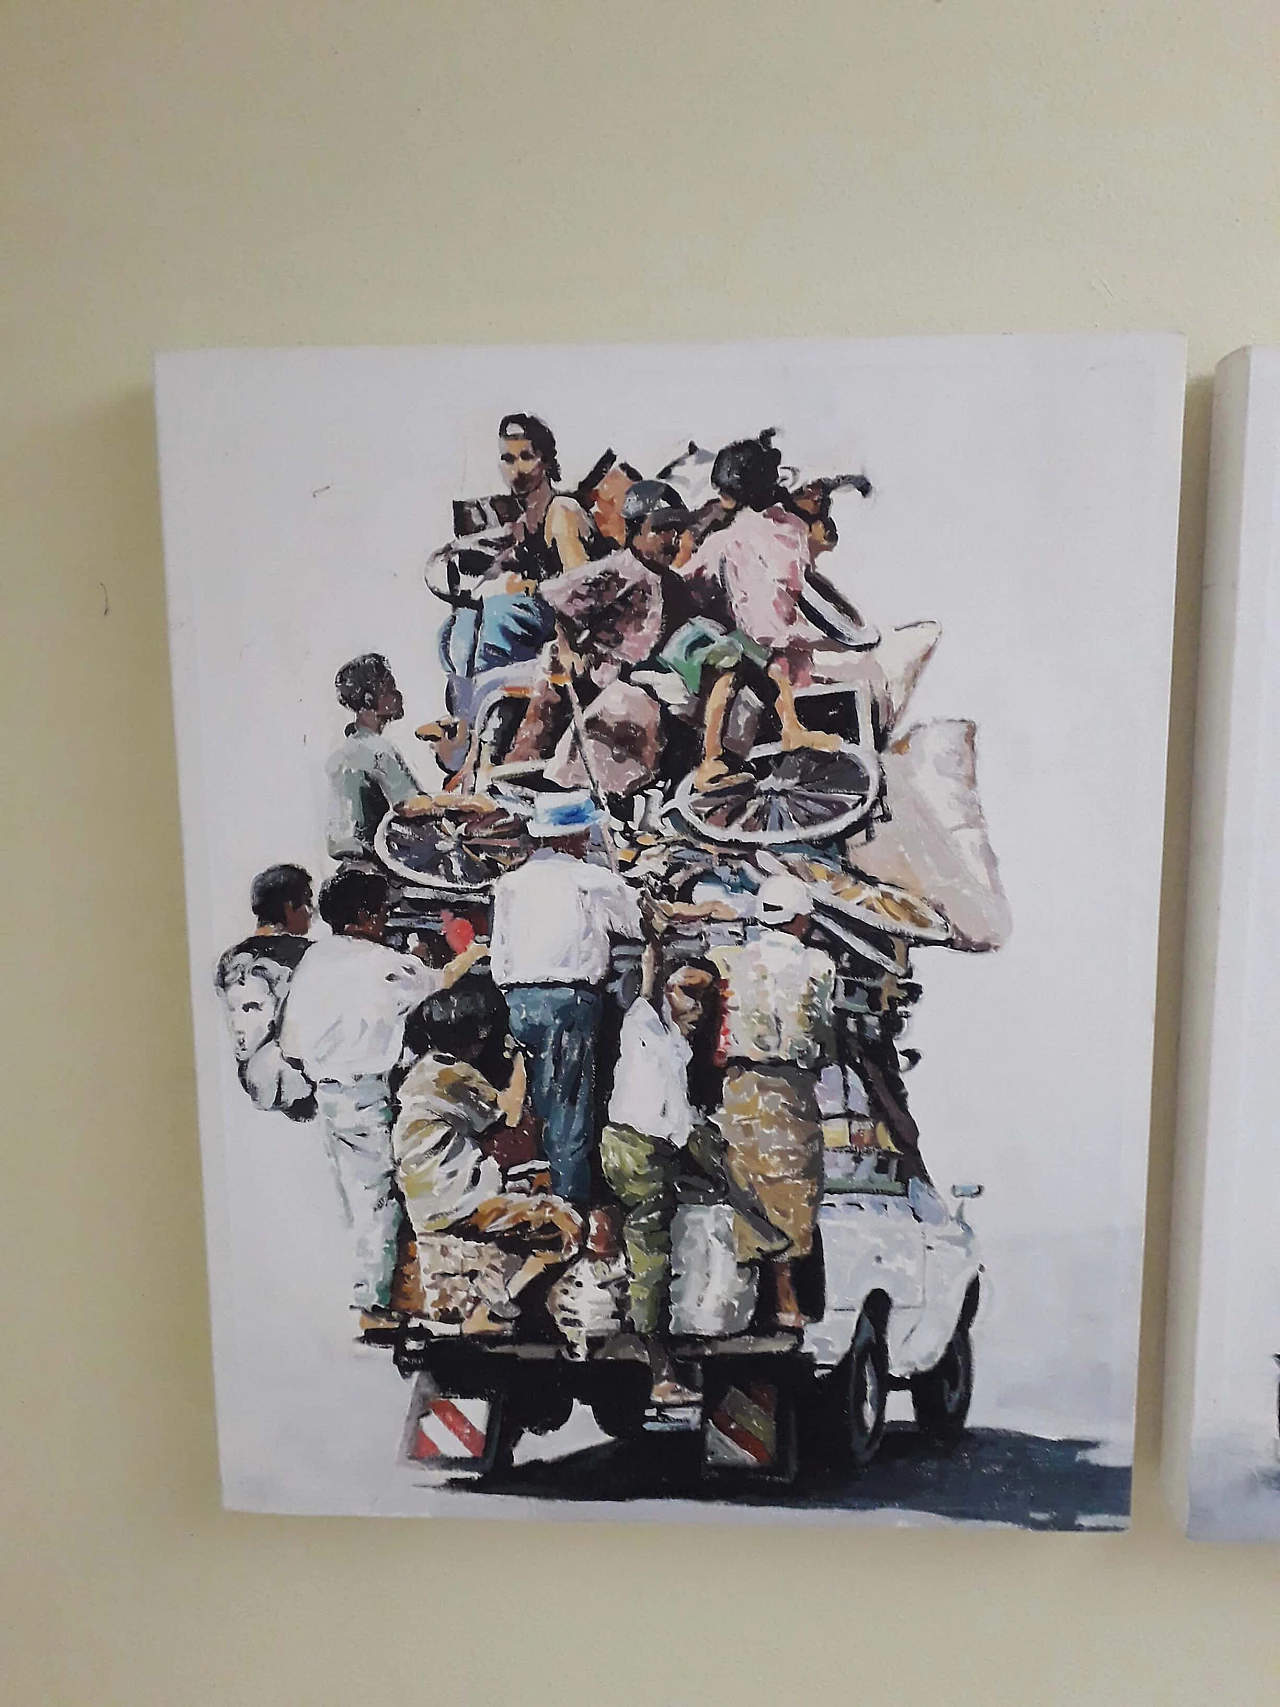 Francesco Sisinni, Cargo, oil painting on canvas, 2014 1